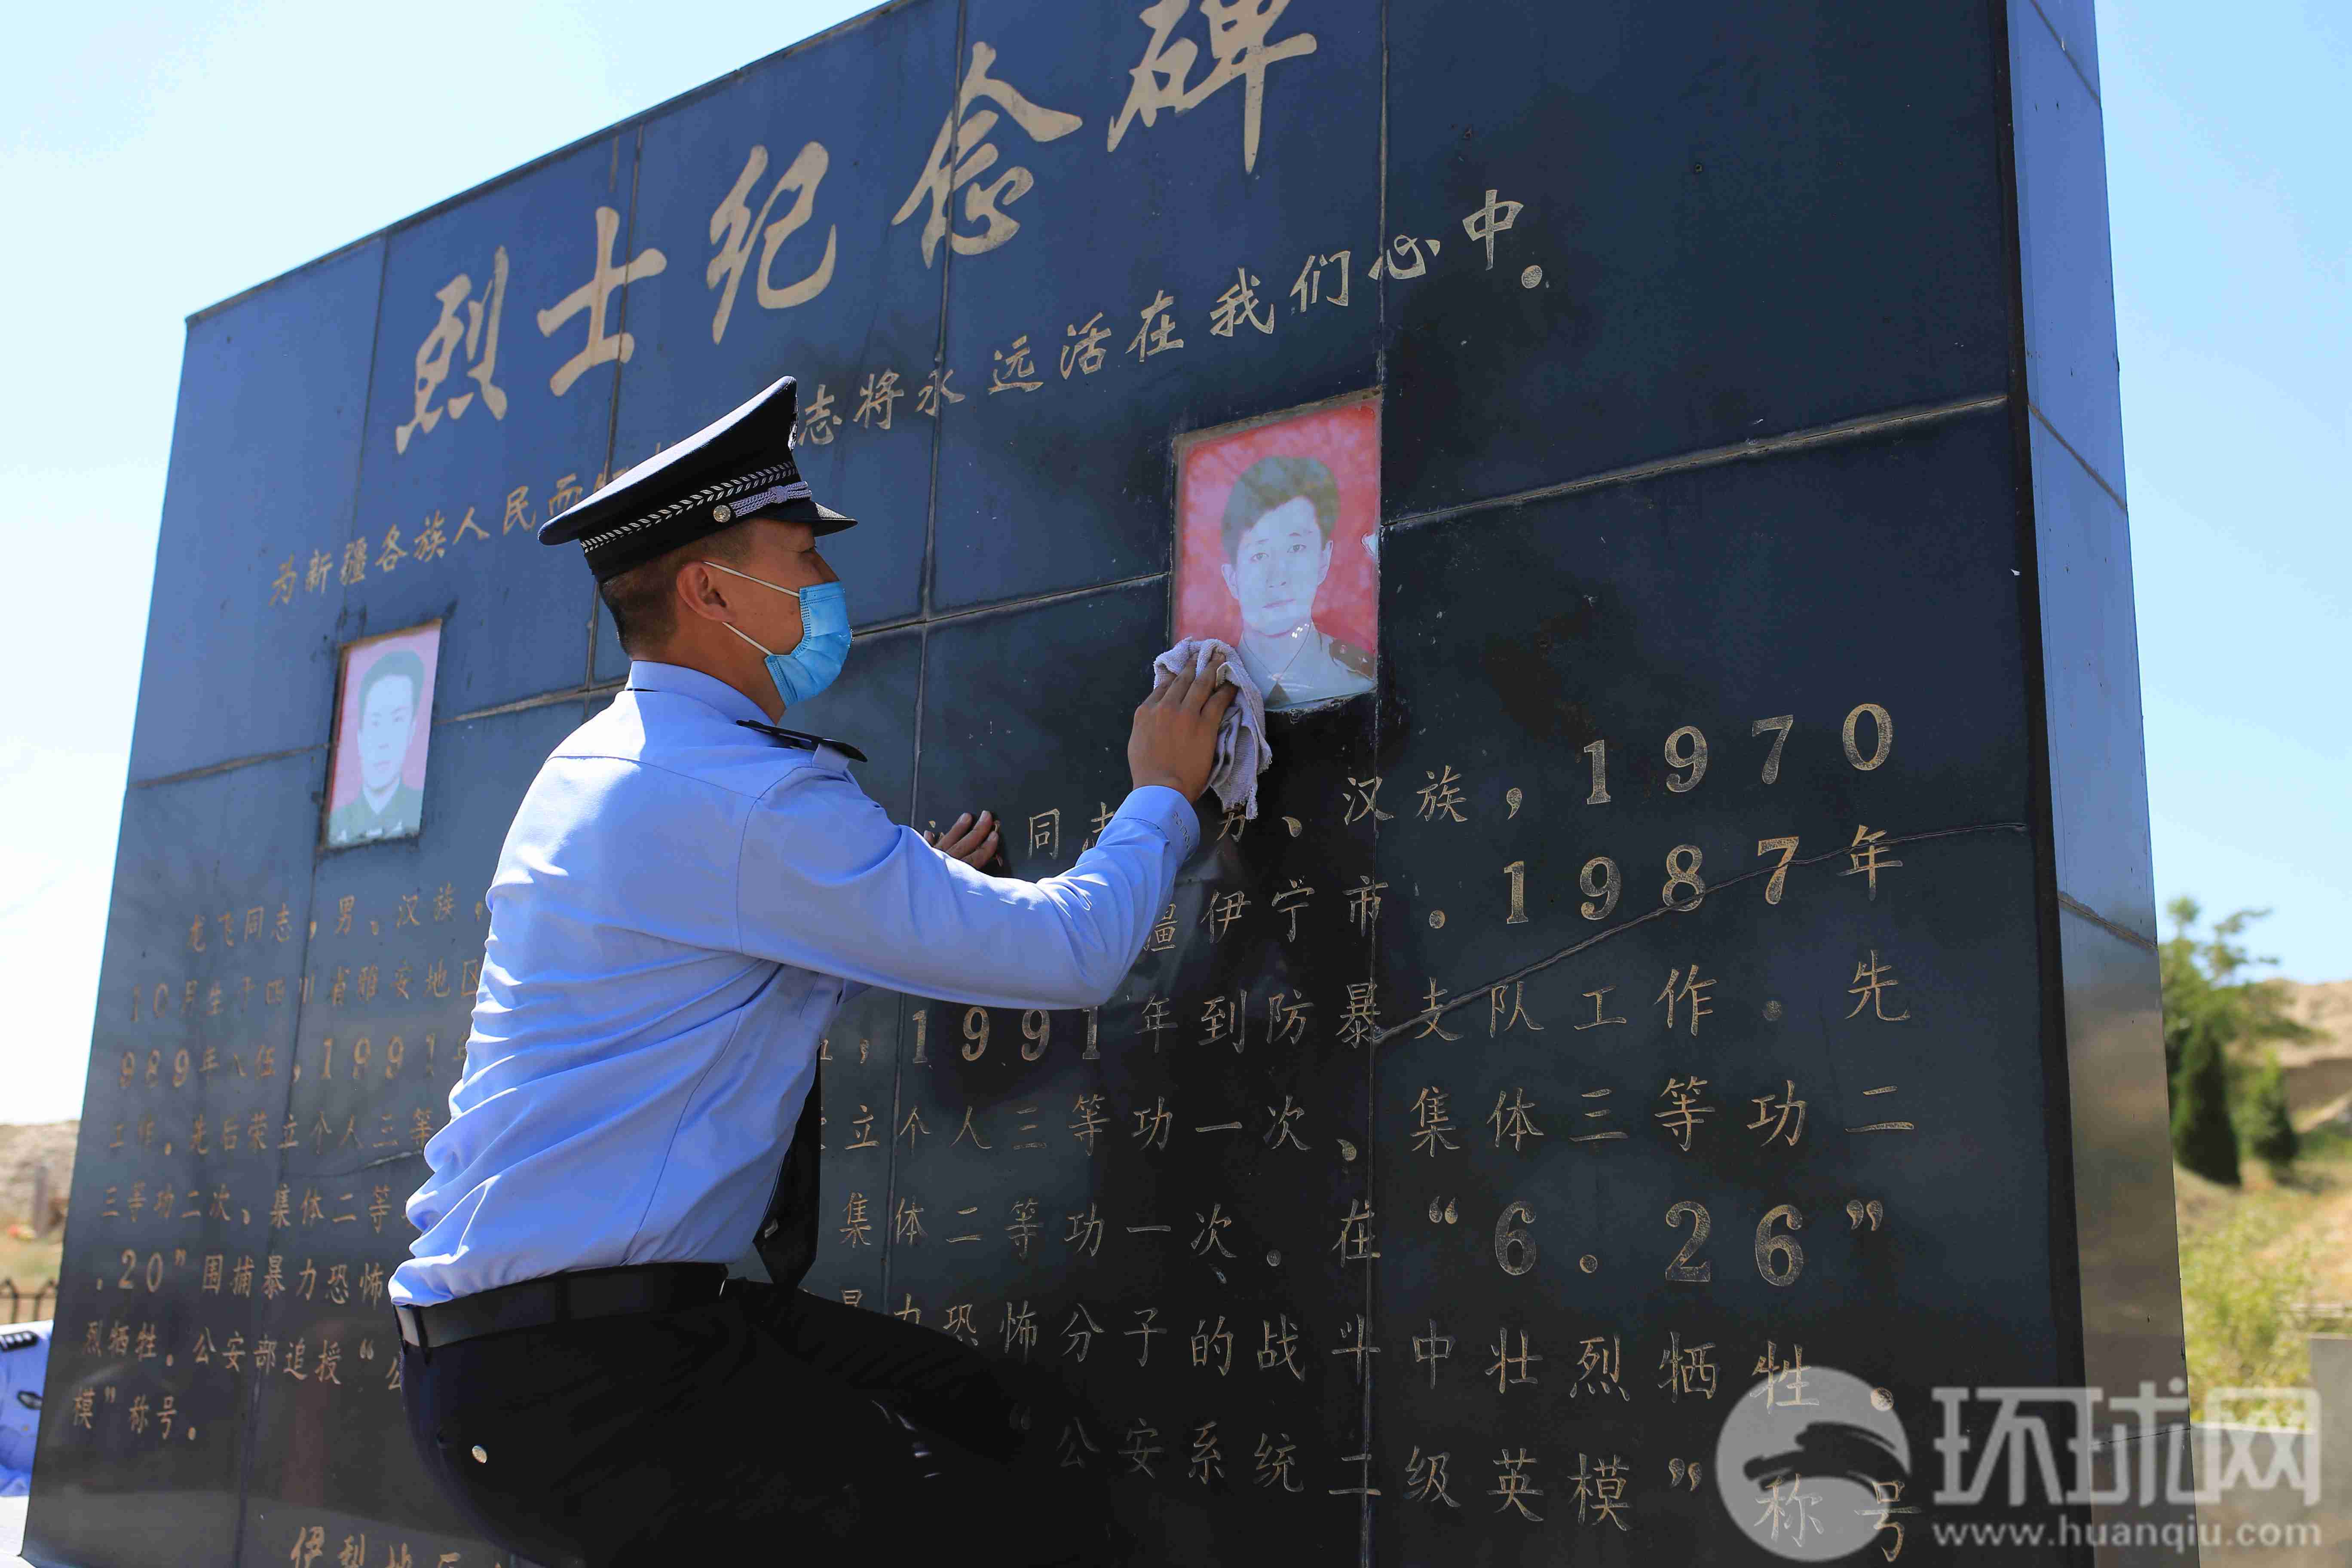 伊犁州公安局的干警在擦拭龙飞和孔永强烈士的纪念碑。摄影 范凌志